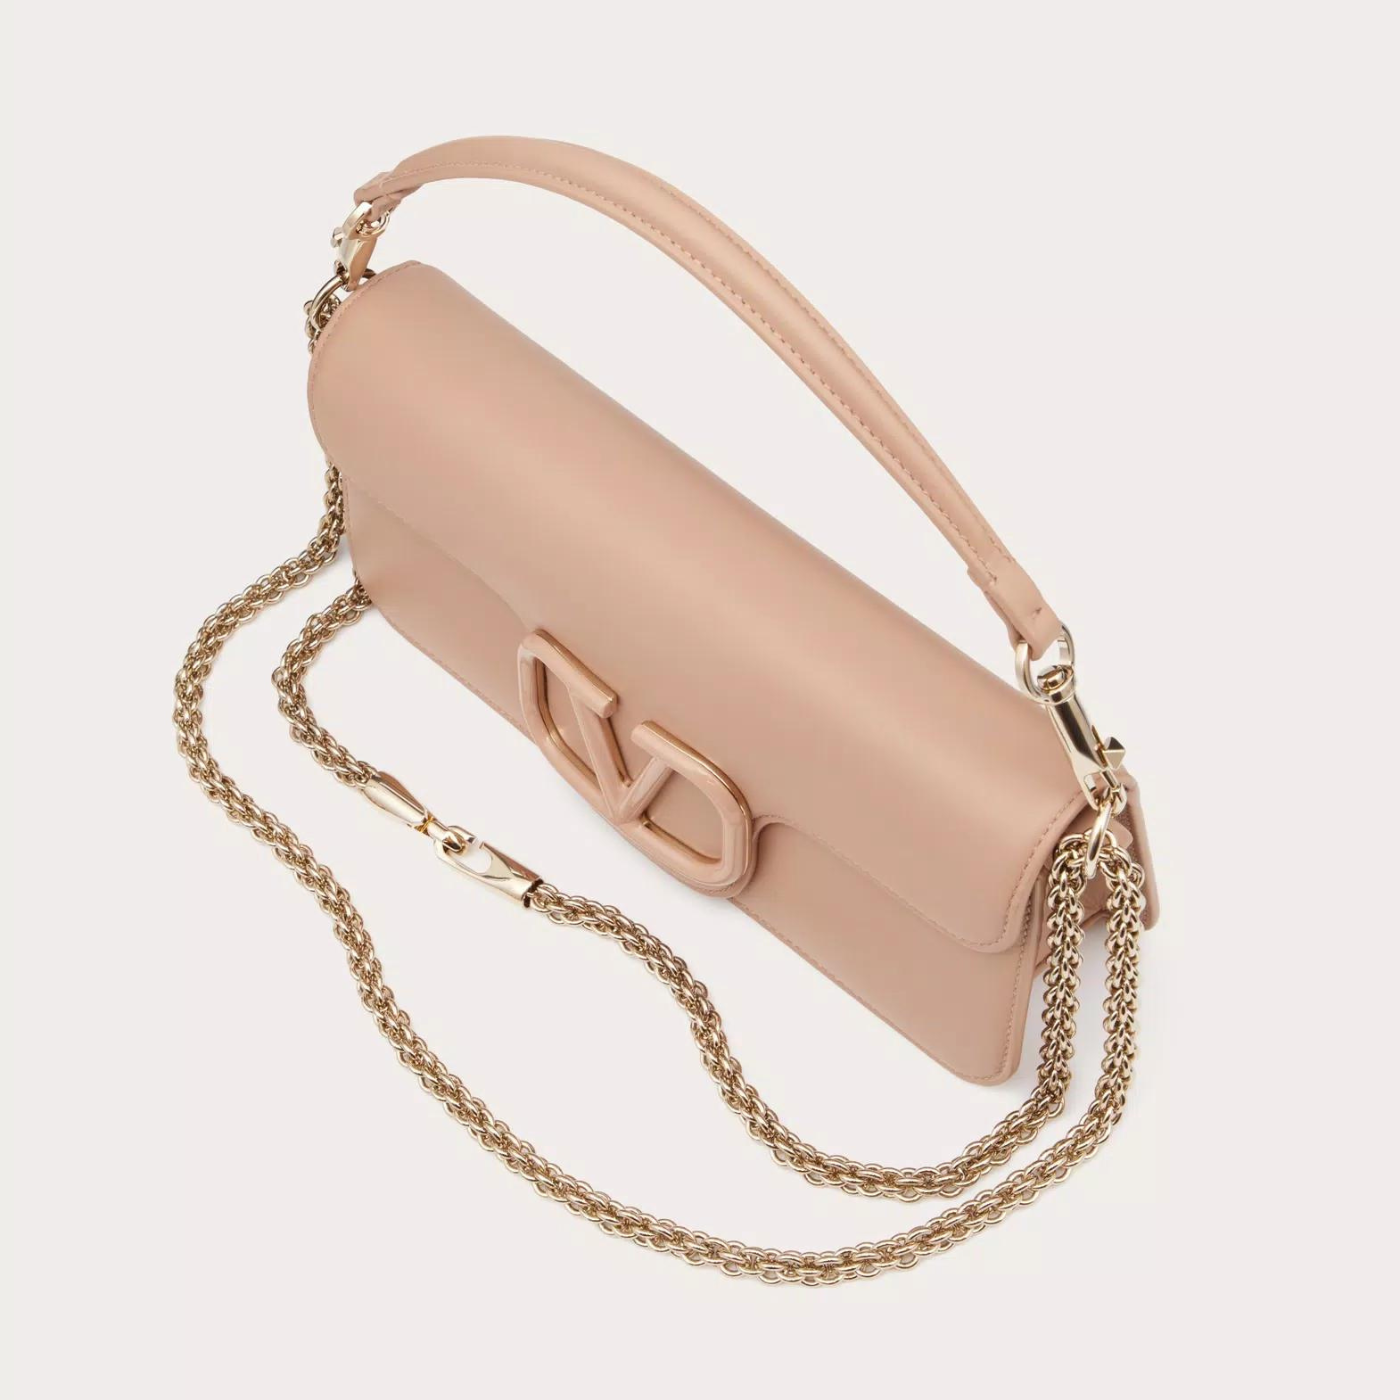 Locò Shoulder Bag in Rose Cannelle Handbags VALENTINO - LOLAMIR